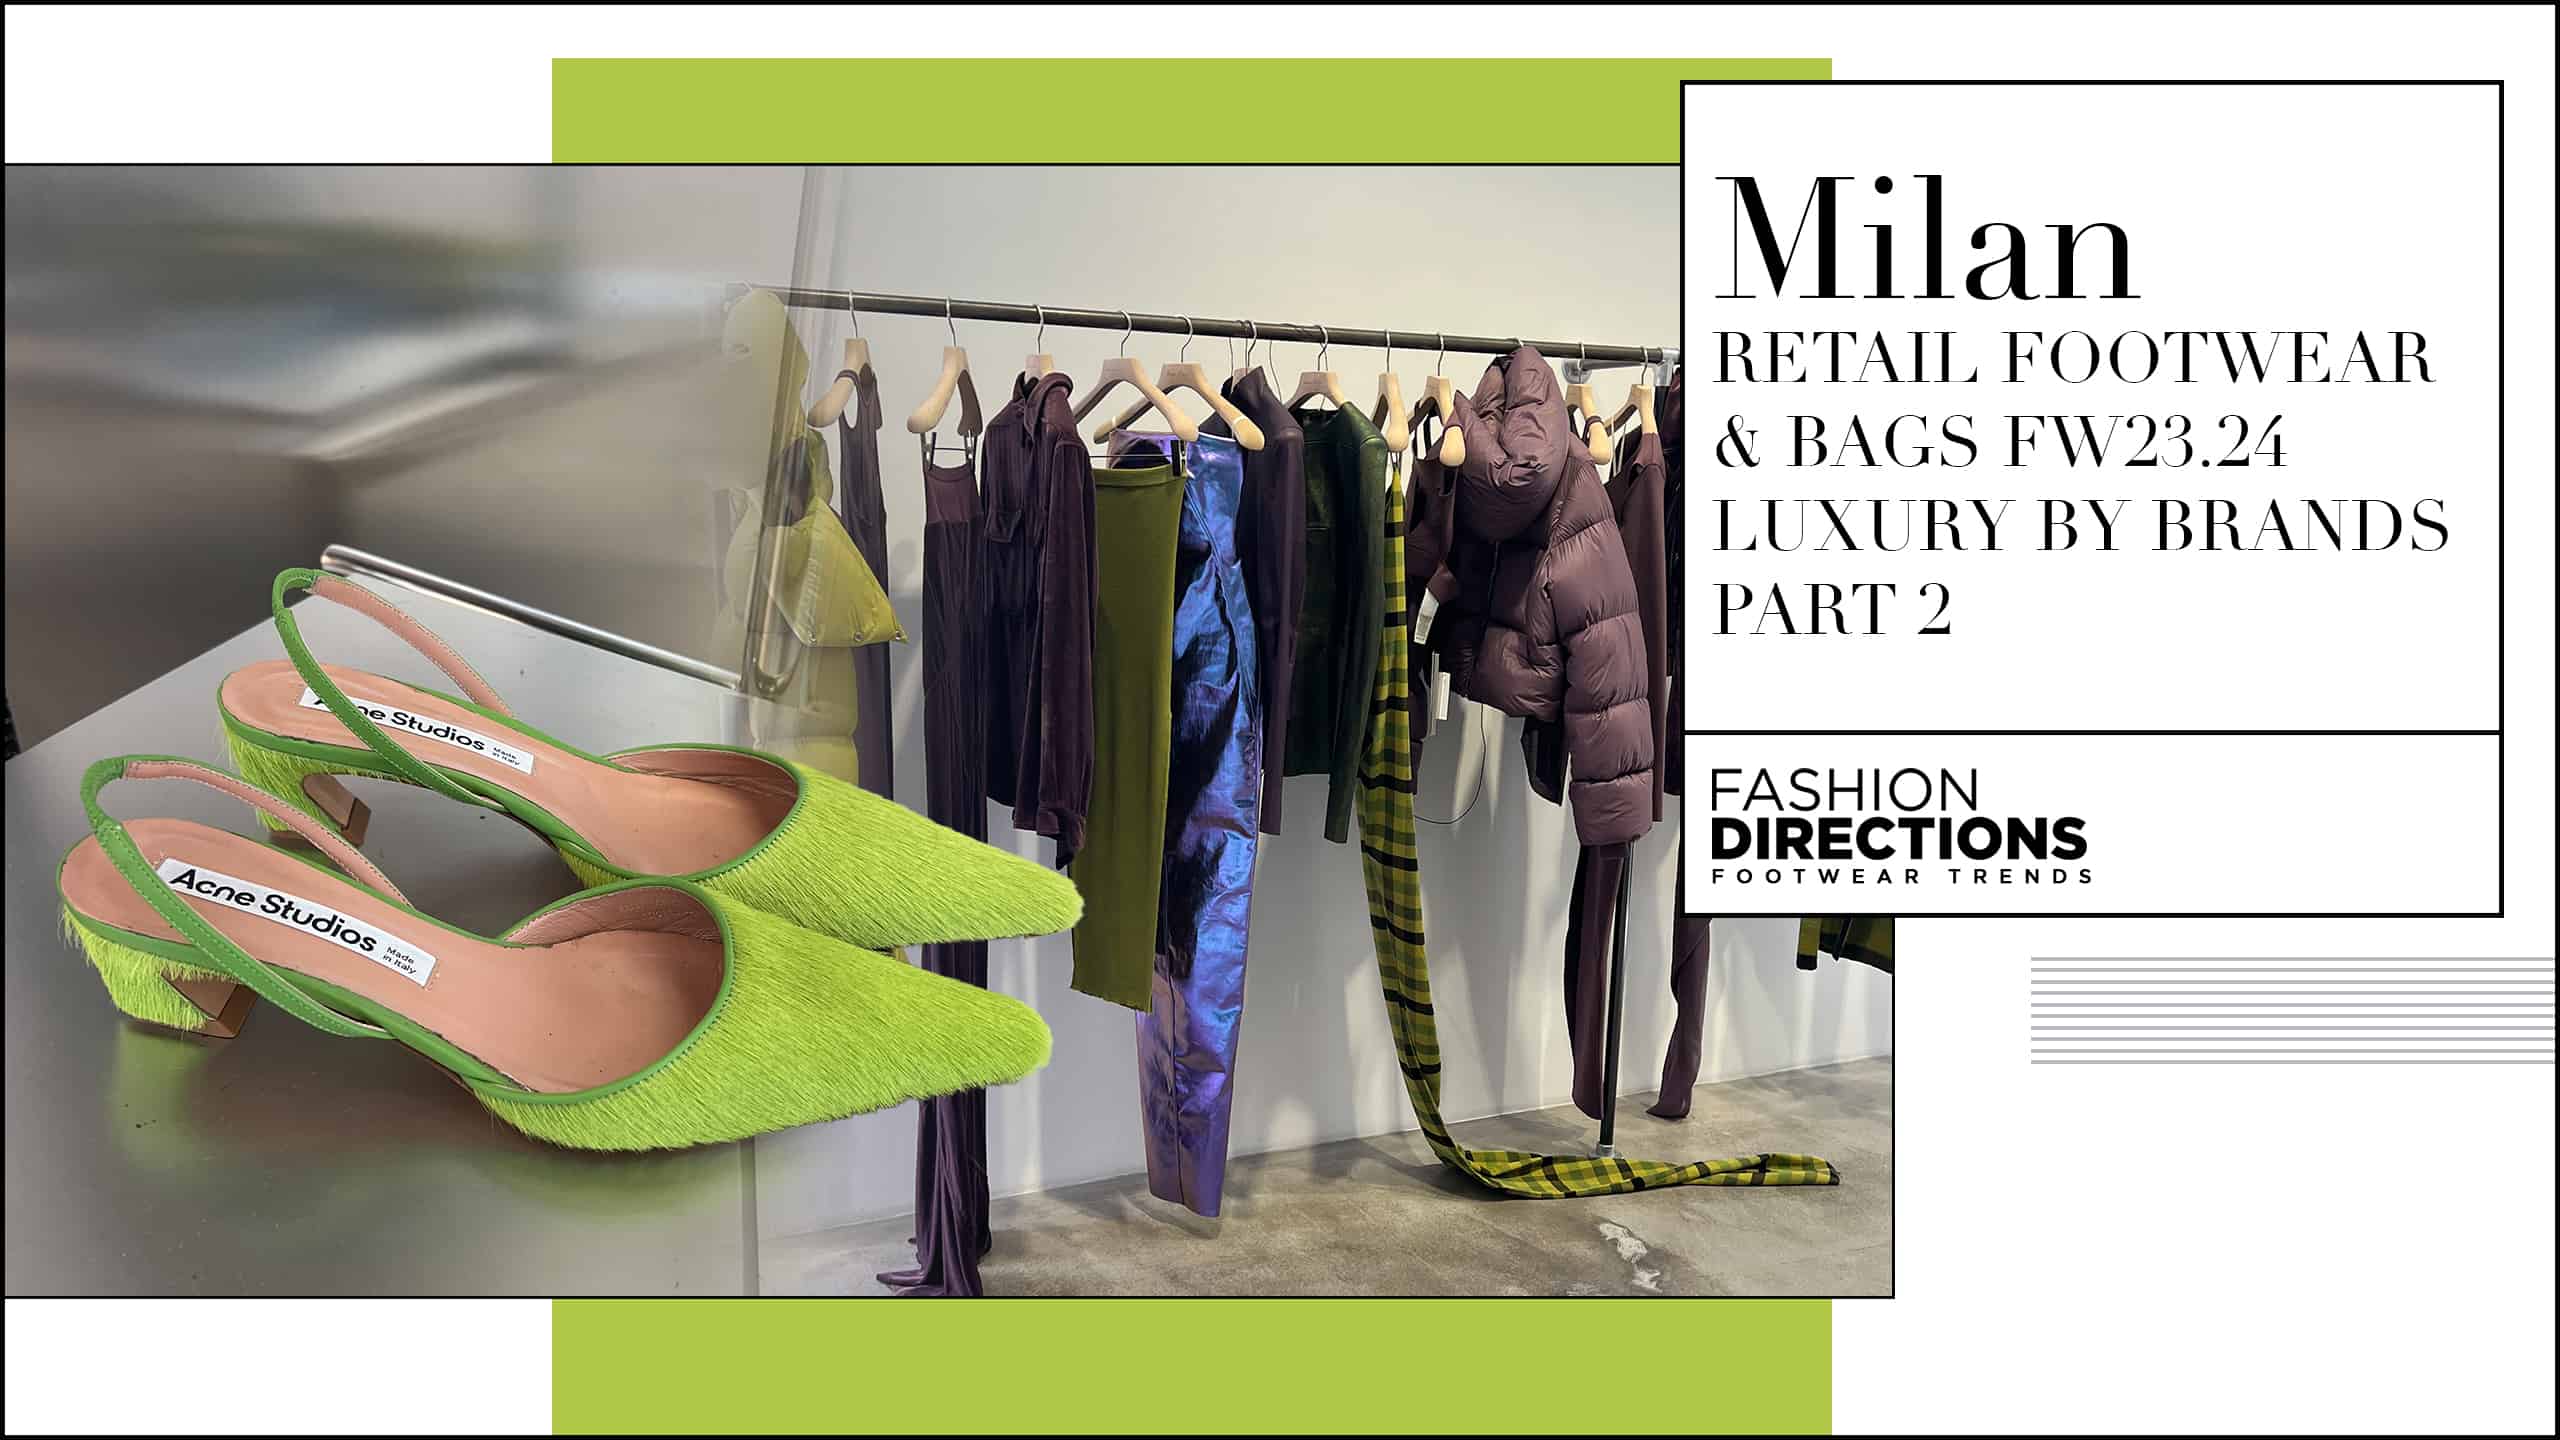 Milan Retail Footwear Bags fw23.24 Luxury By Brands Part 2